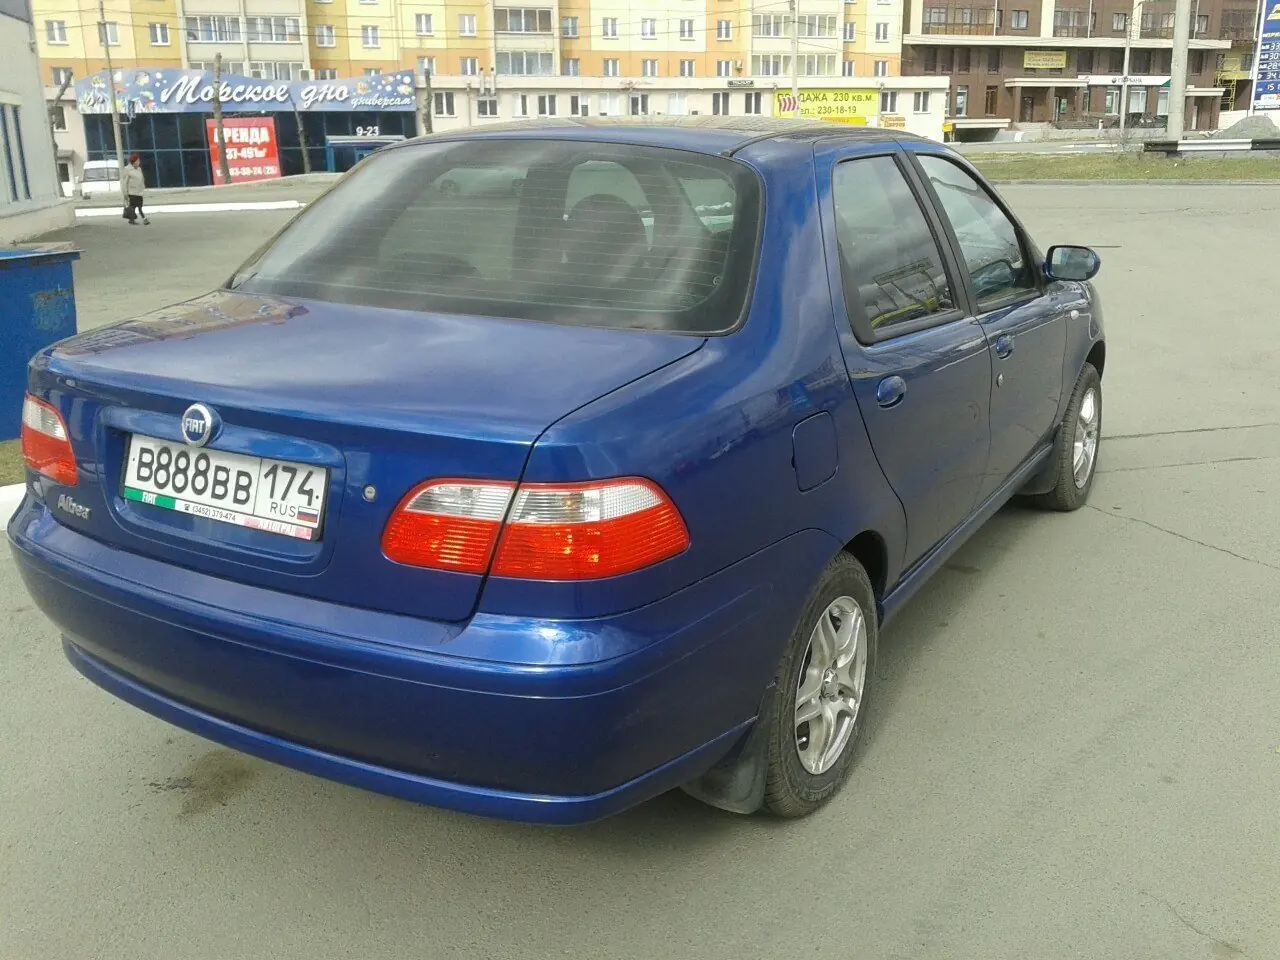 Fiat Albea 2007, 1.4 литра, Всем здравствуйте, Челябинск